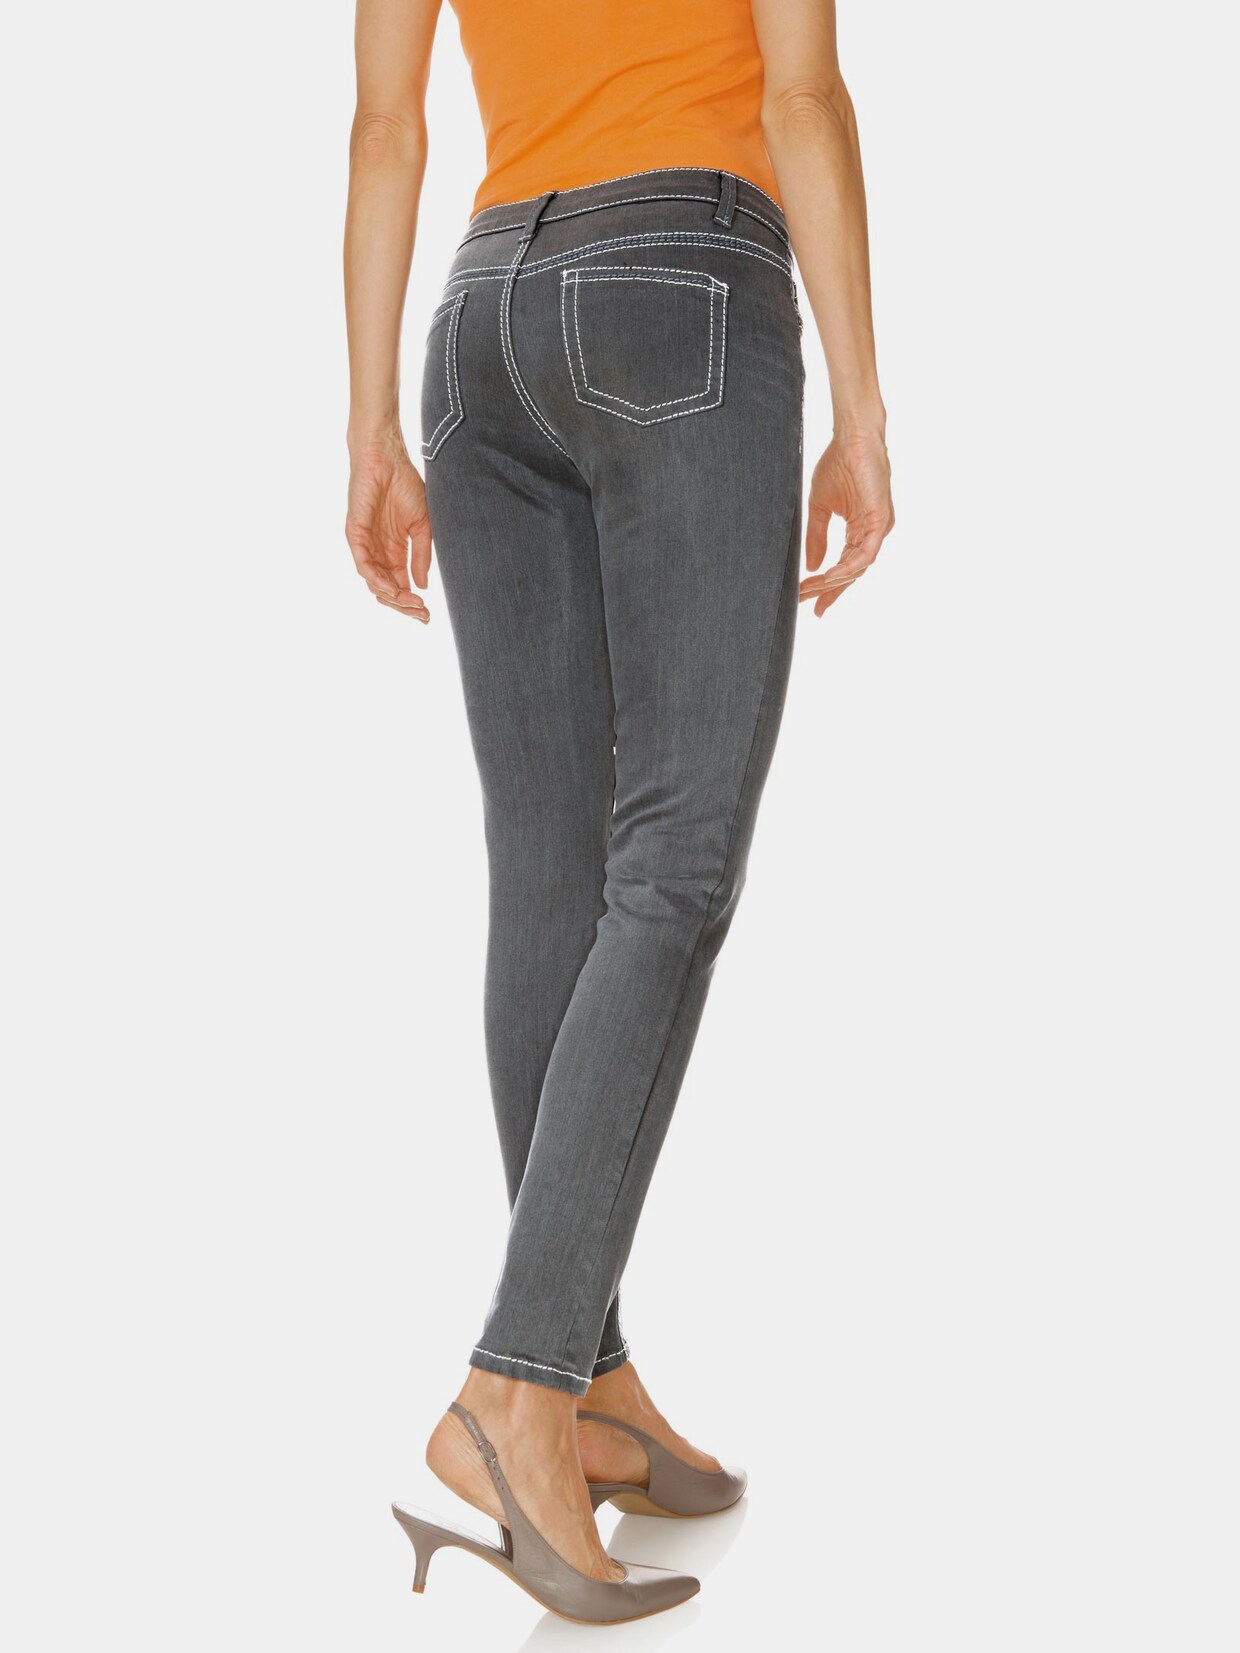 Best Connections Jeans - grey denim